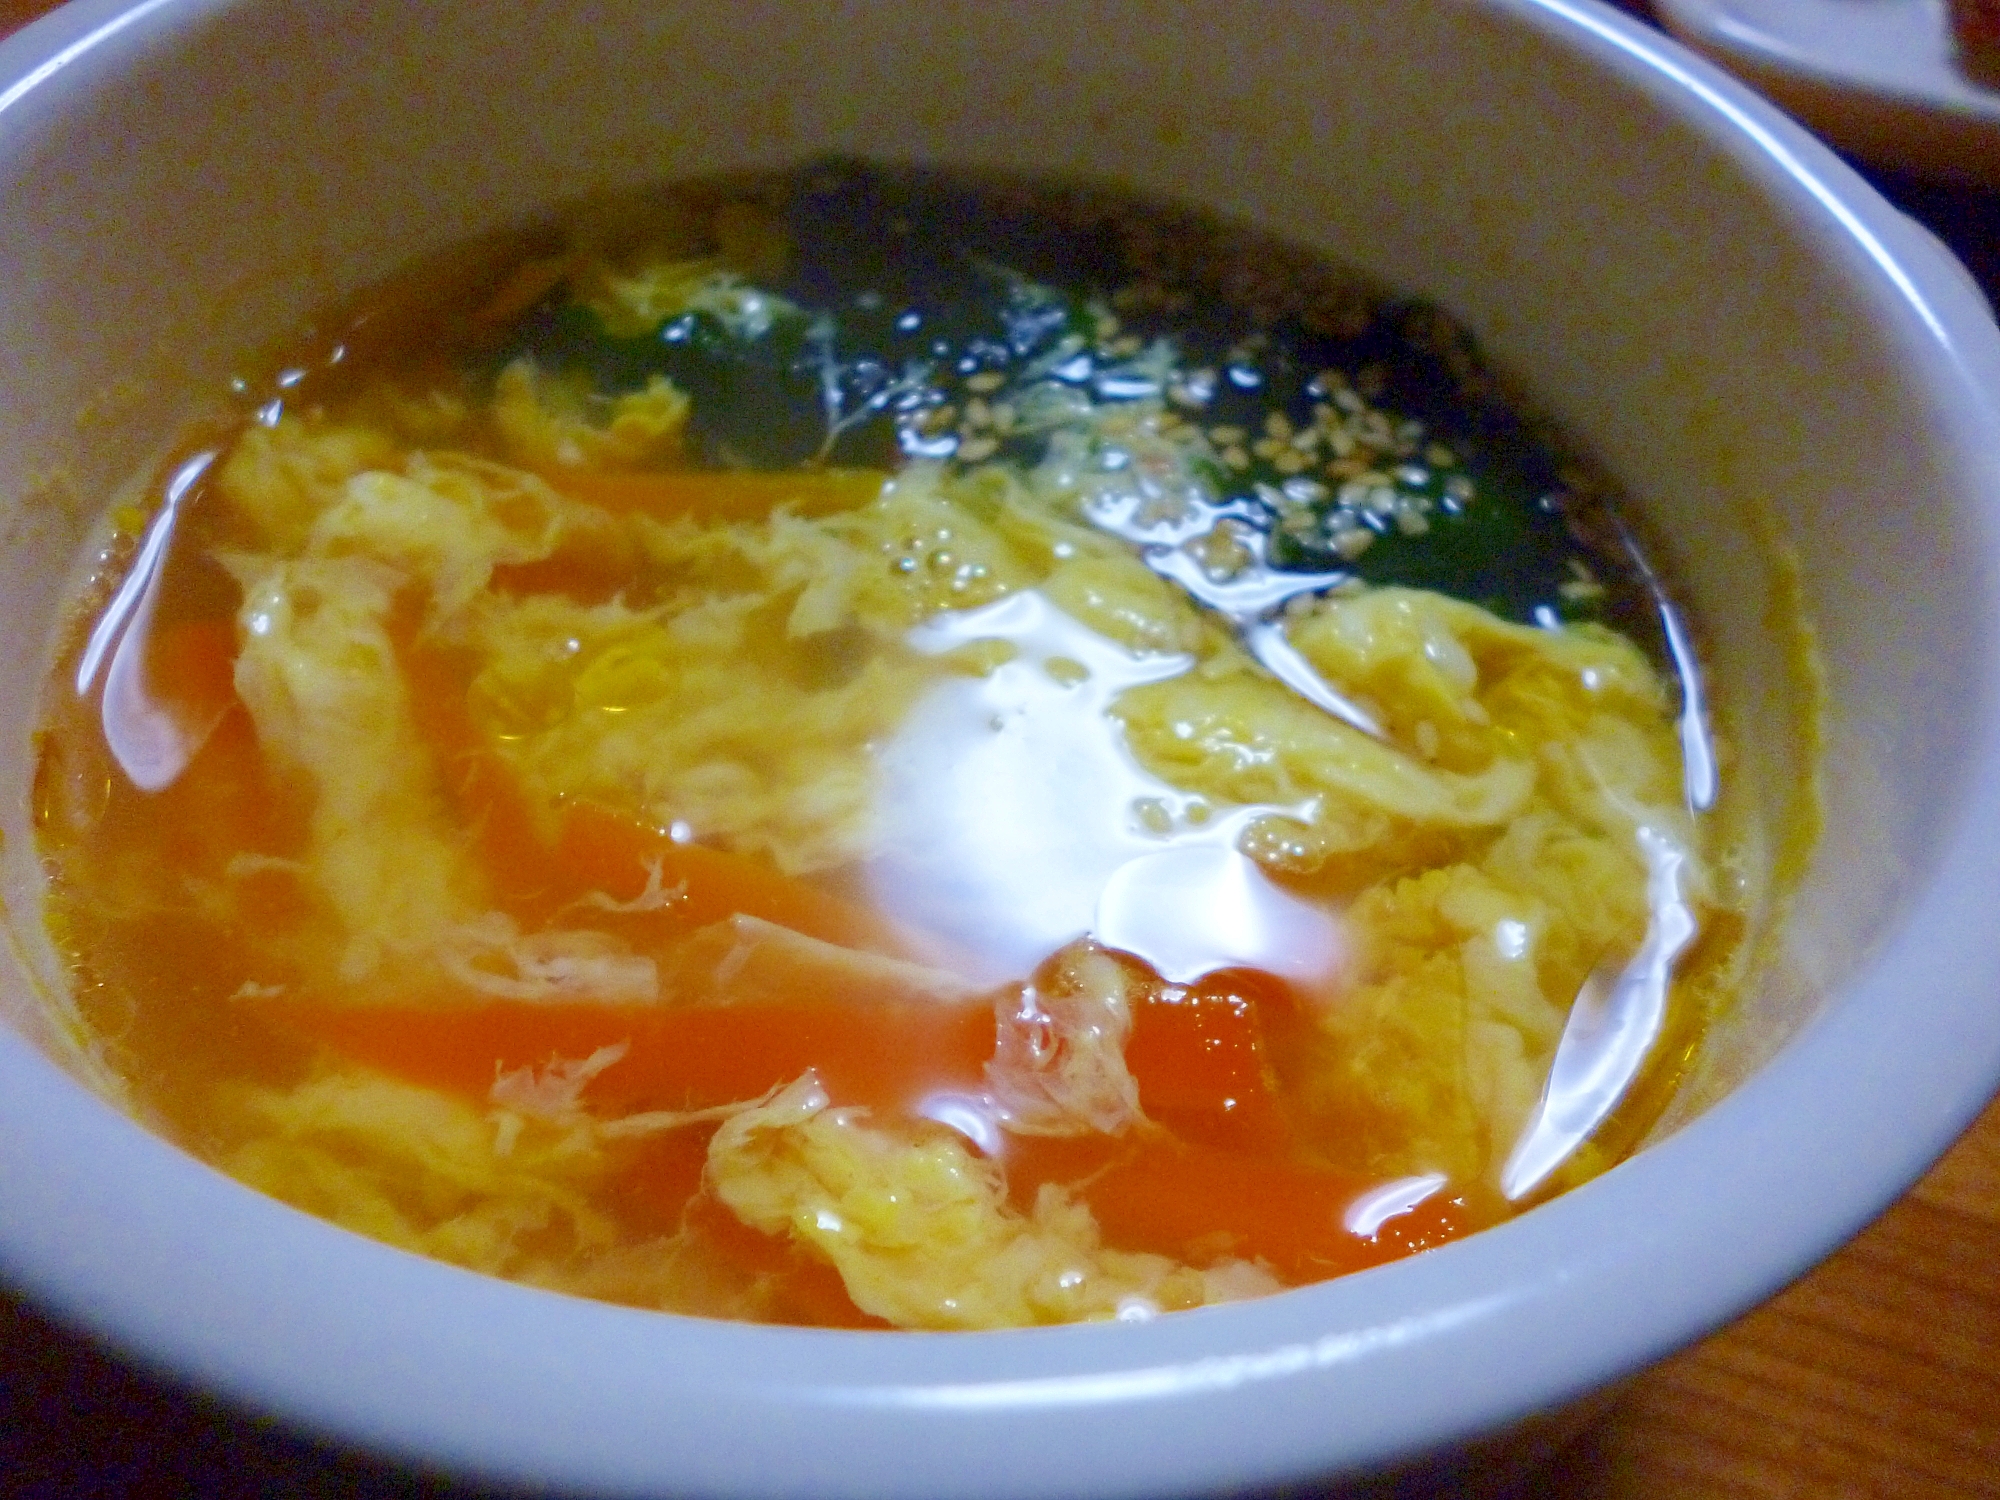 クッパ風・卵とじスープ